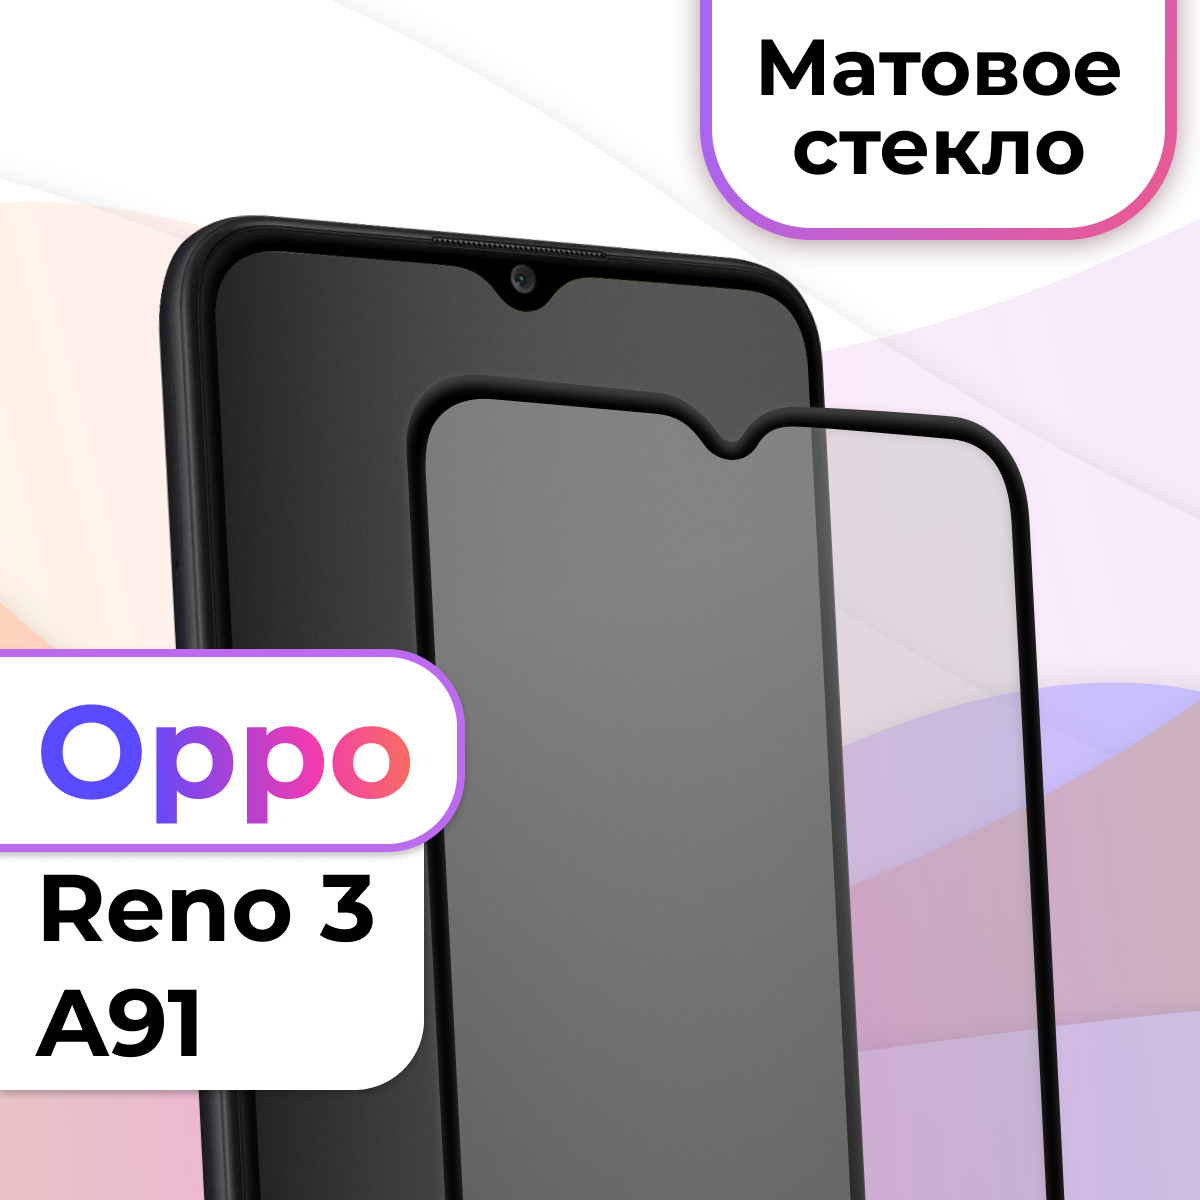 Защитное стекло на телефон Oppo Reno 3 A91 / Матовое противоударное стекло на весь экран для смартфона Оппо Рено 3 А91 / Бронестекло для телефона